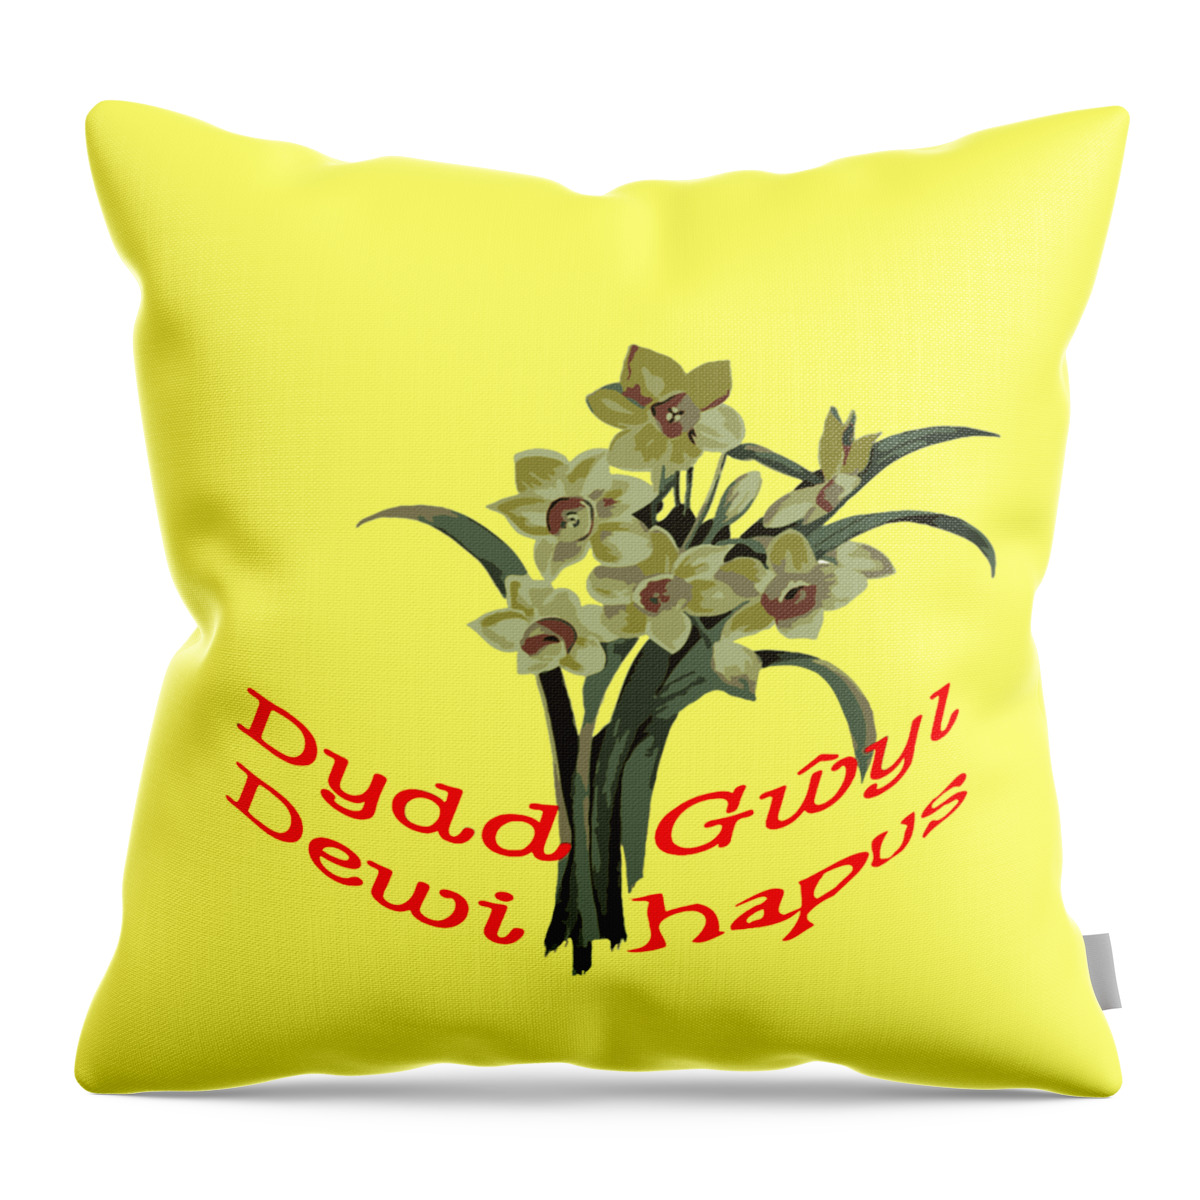 Daffodil Throw Pillow featuring the digital art Dydd Gwyl Dewi Hapus by Taiche Acrylic Art